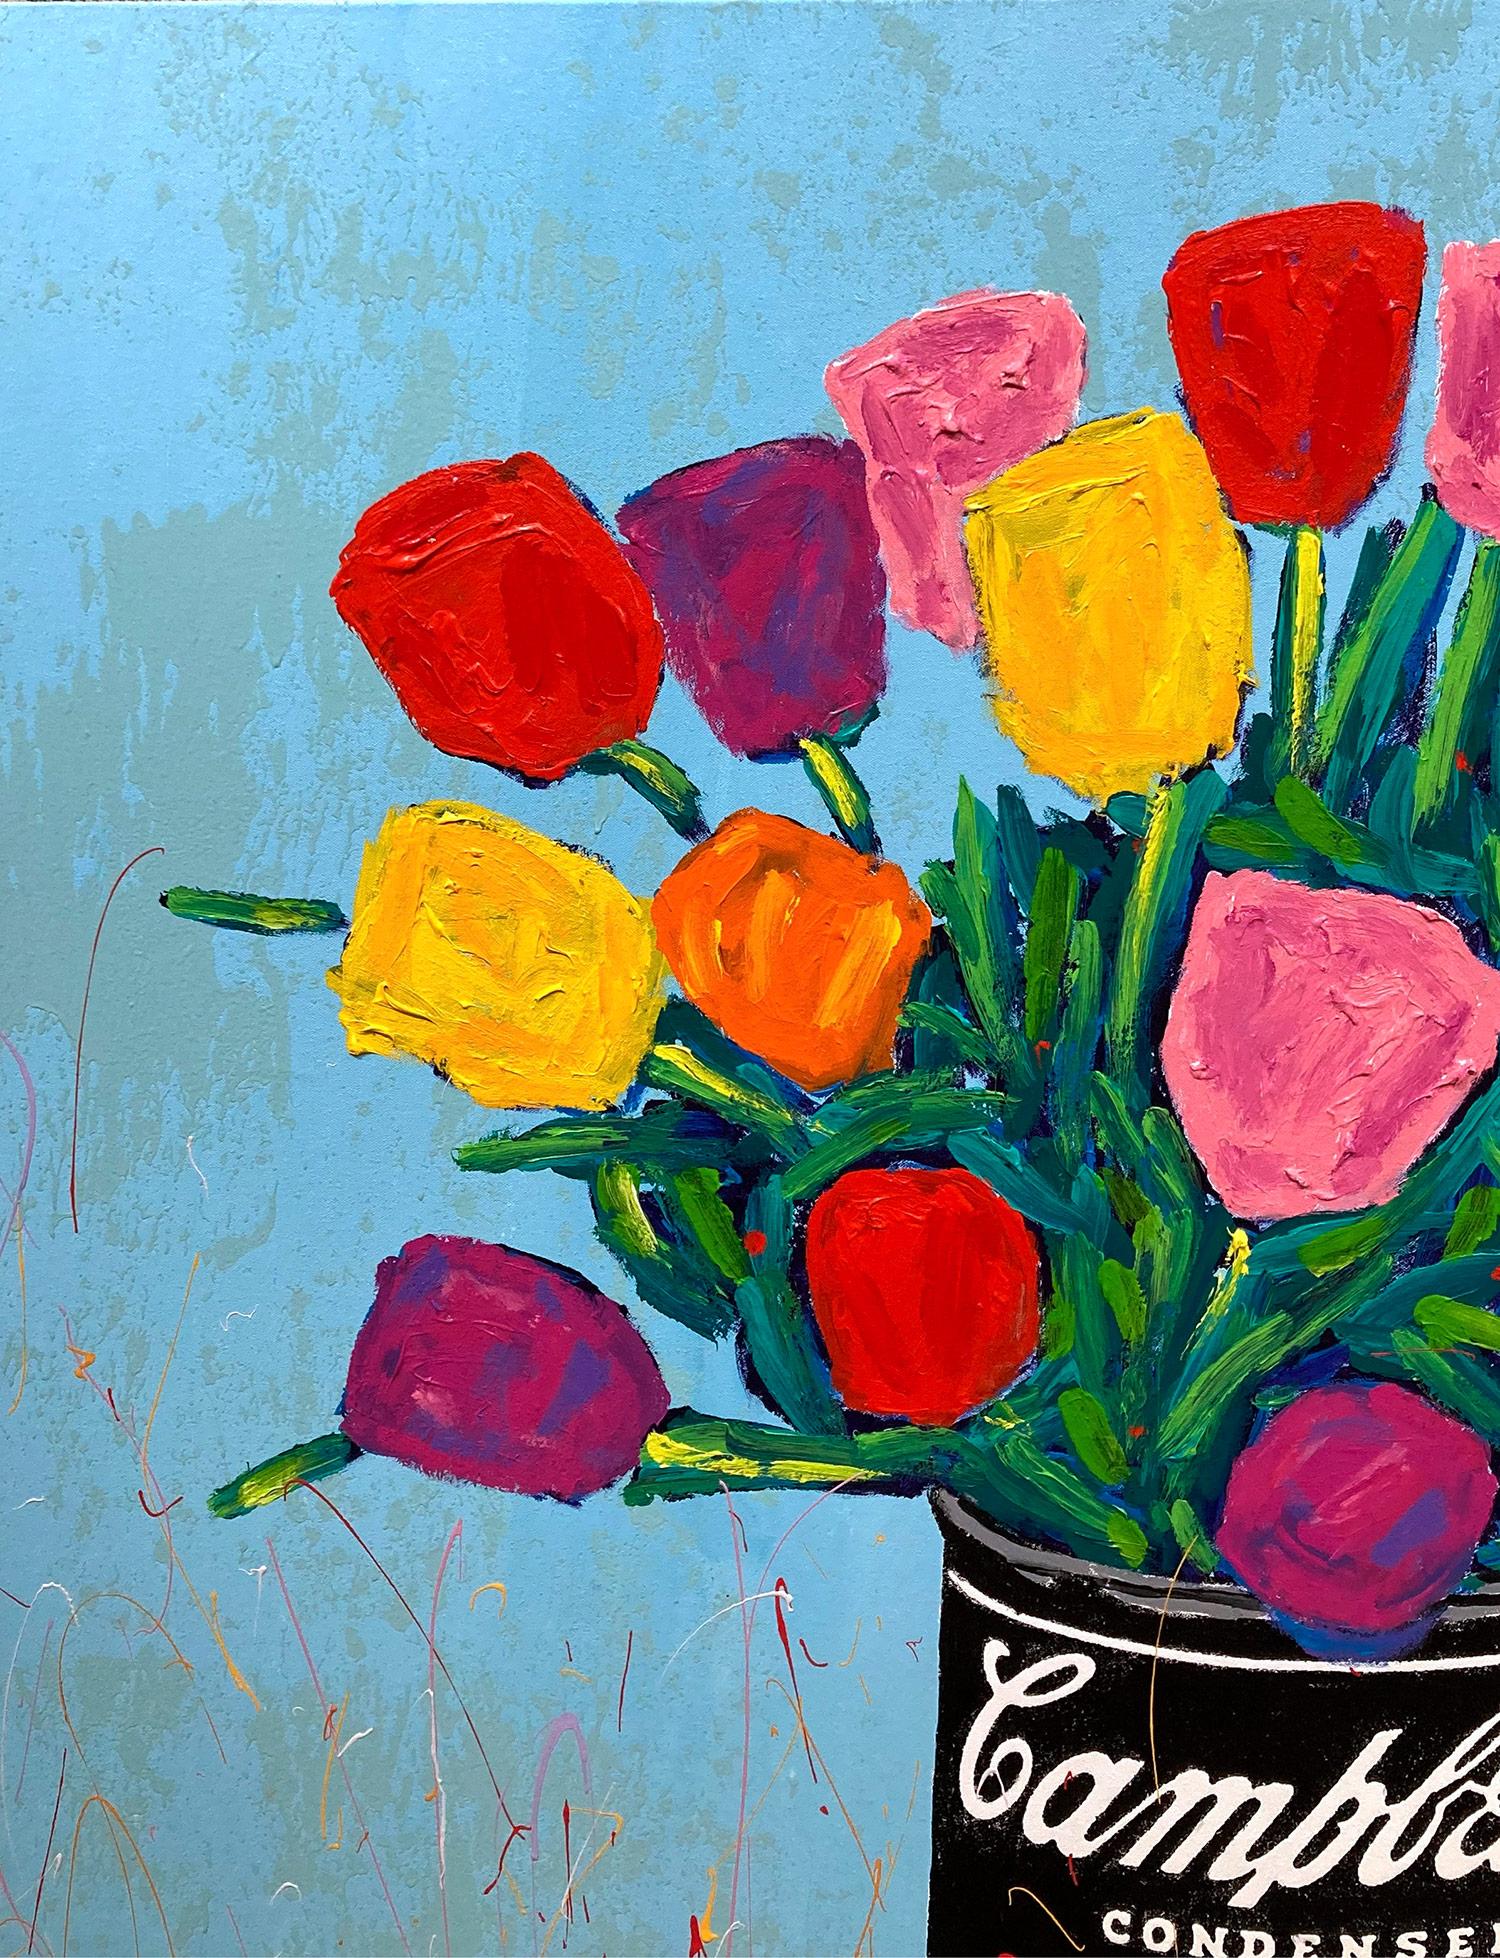 Une grande œuvre pop représentant l'emblématique soupe à la tomate Campbell d'Andy Warhols tenant un bouquet coloré de tulipes. Avec ses empâtements et ses coups de pinceau rapides, l'artiste nous attire par son mouvement et réussit à capter